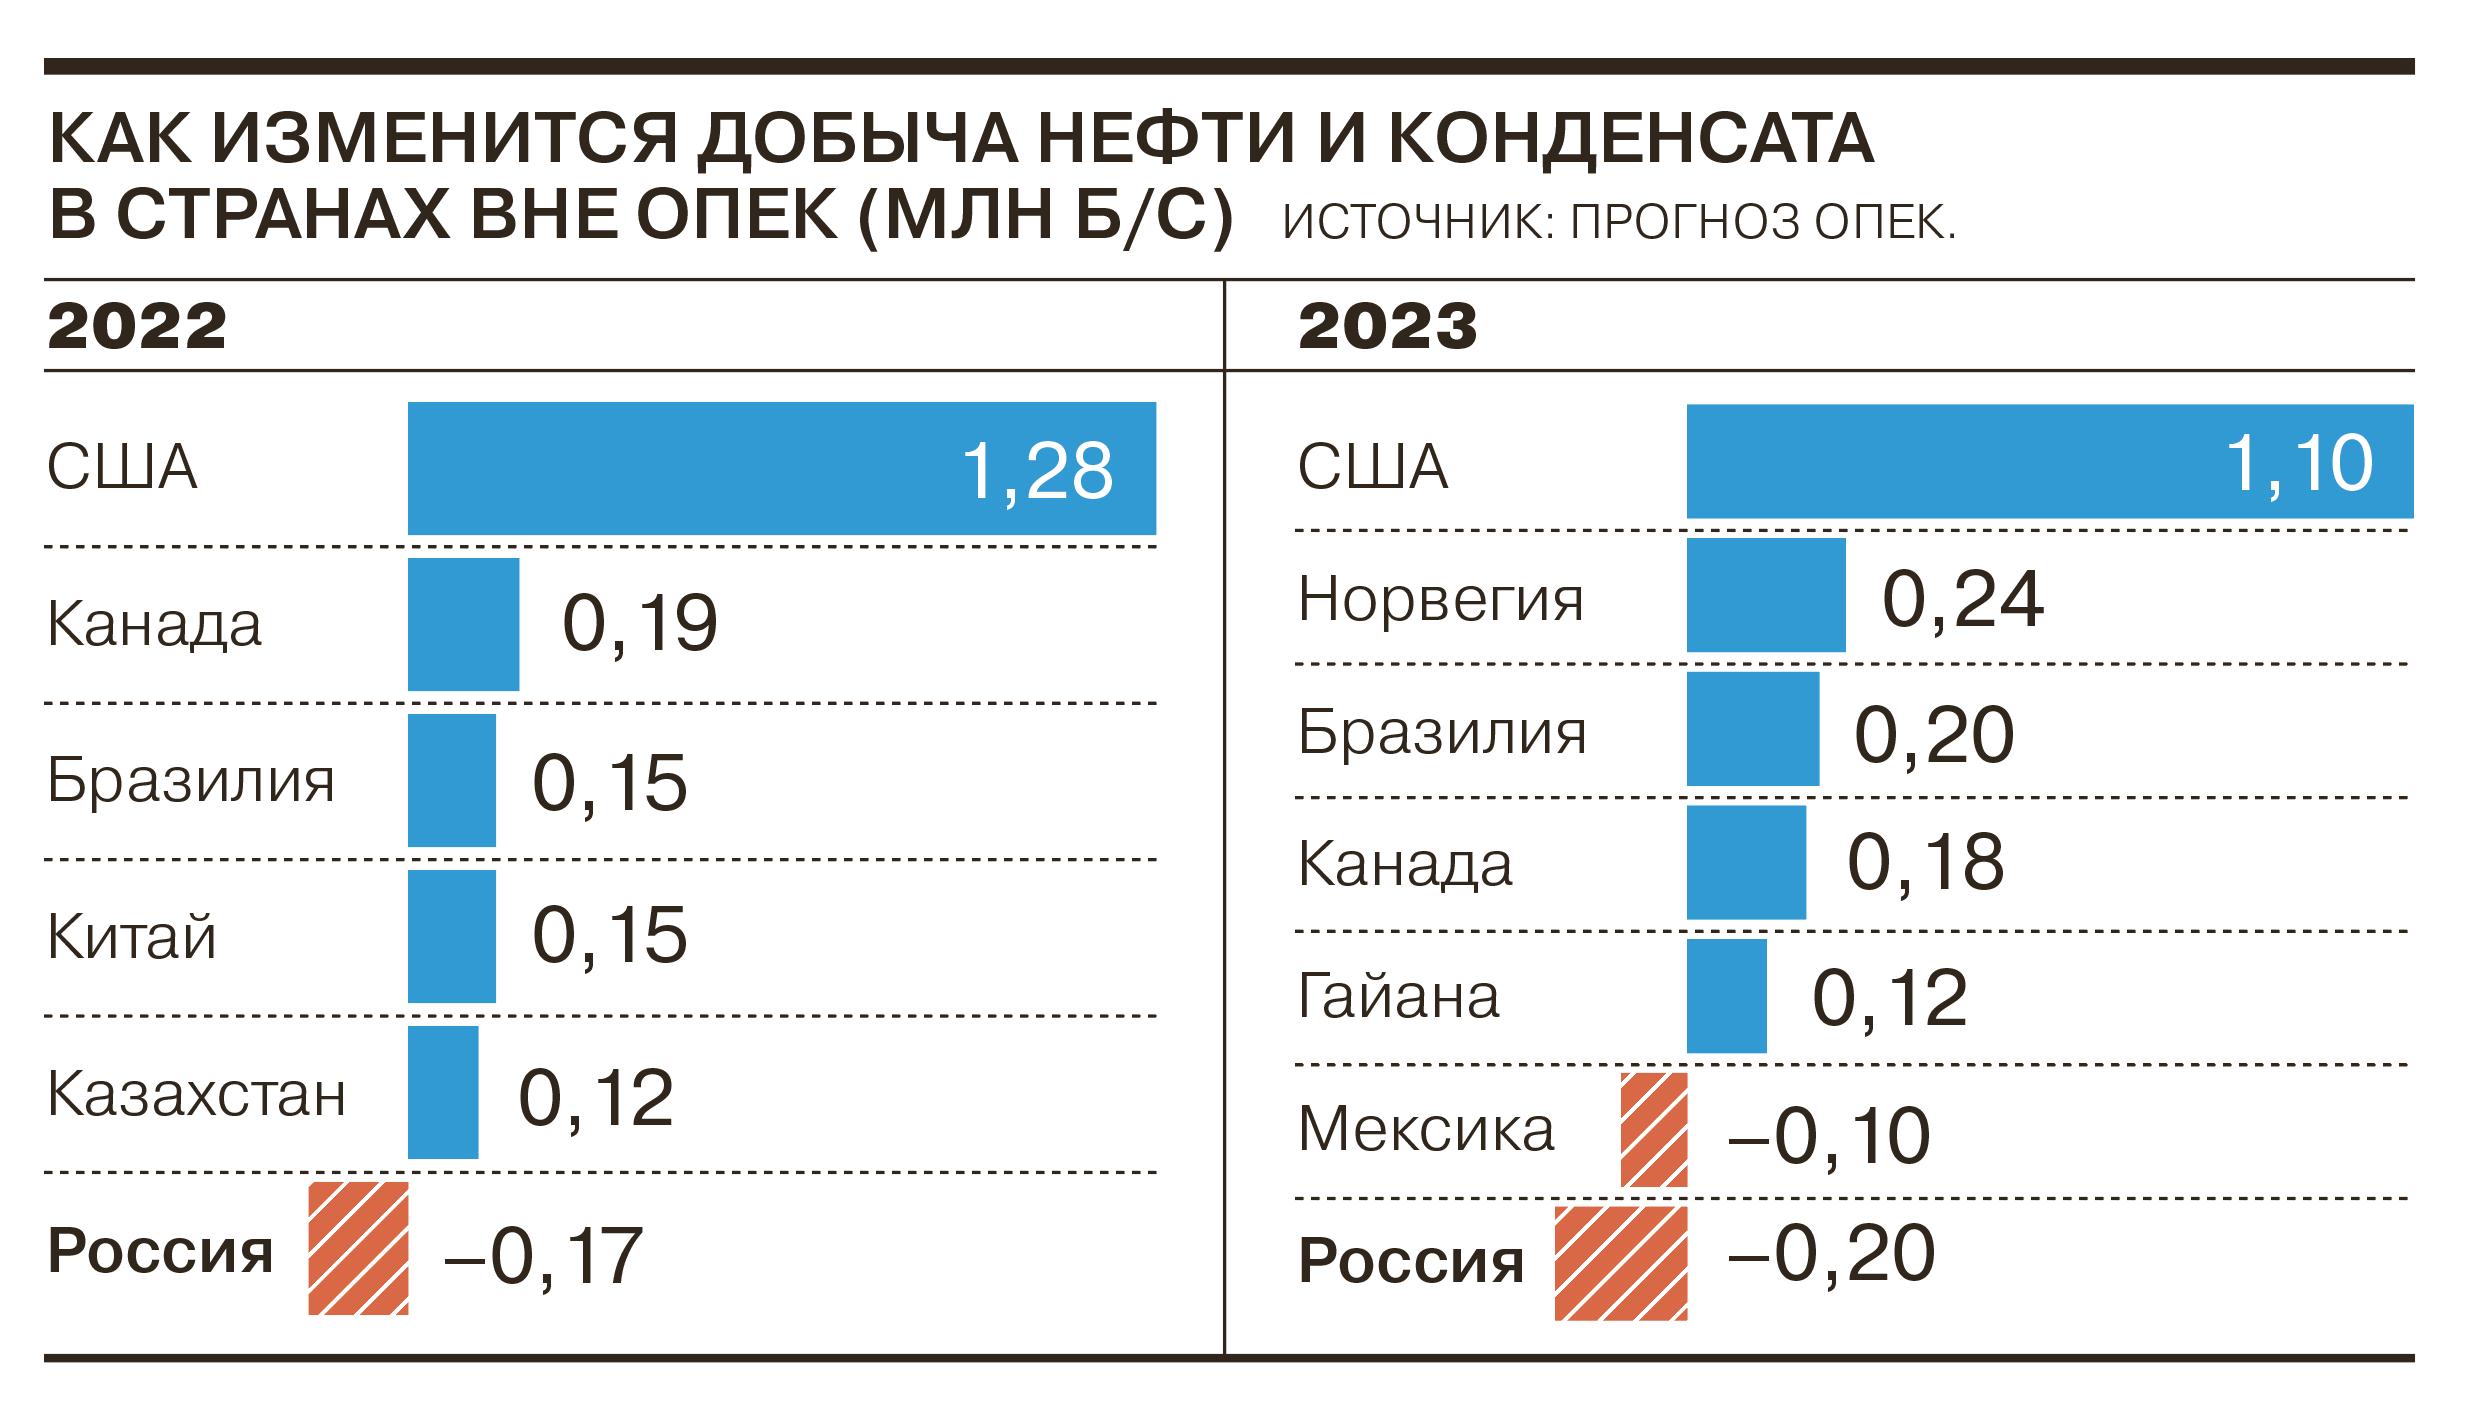 ОПЕК прогнозирует снижение добычи нефти в России в 2022 и 2023 годах